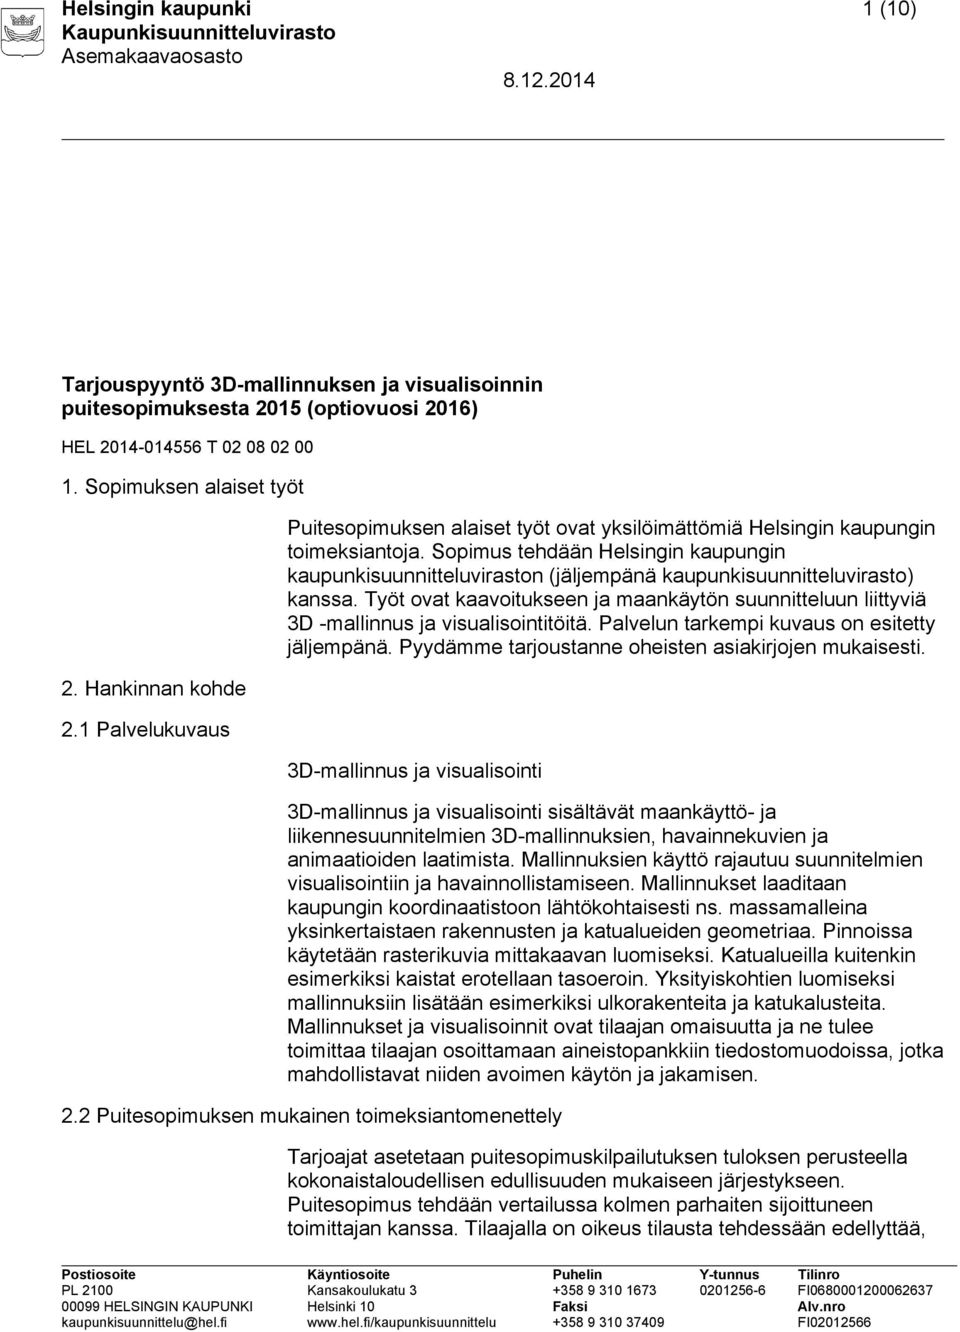 Sopimus tehdään Helsingin kaupungin kaupunkisuunnitteluviraston (jäljempänä kaupunkisuunnitteluvirasto) kanssa.